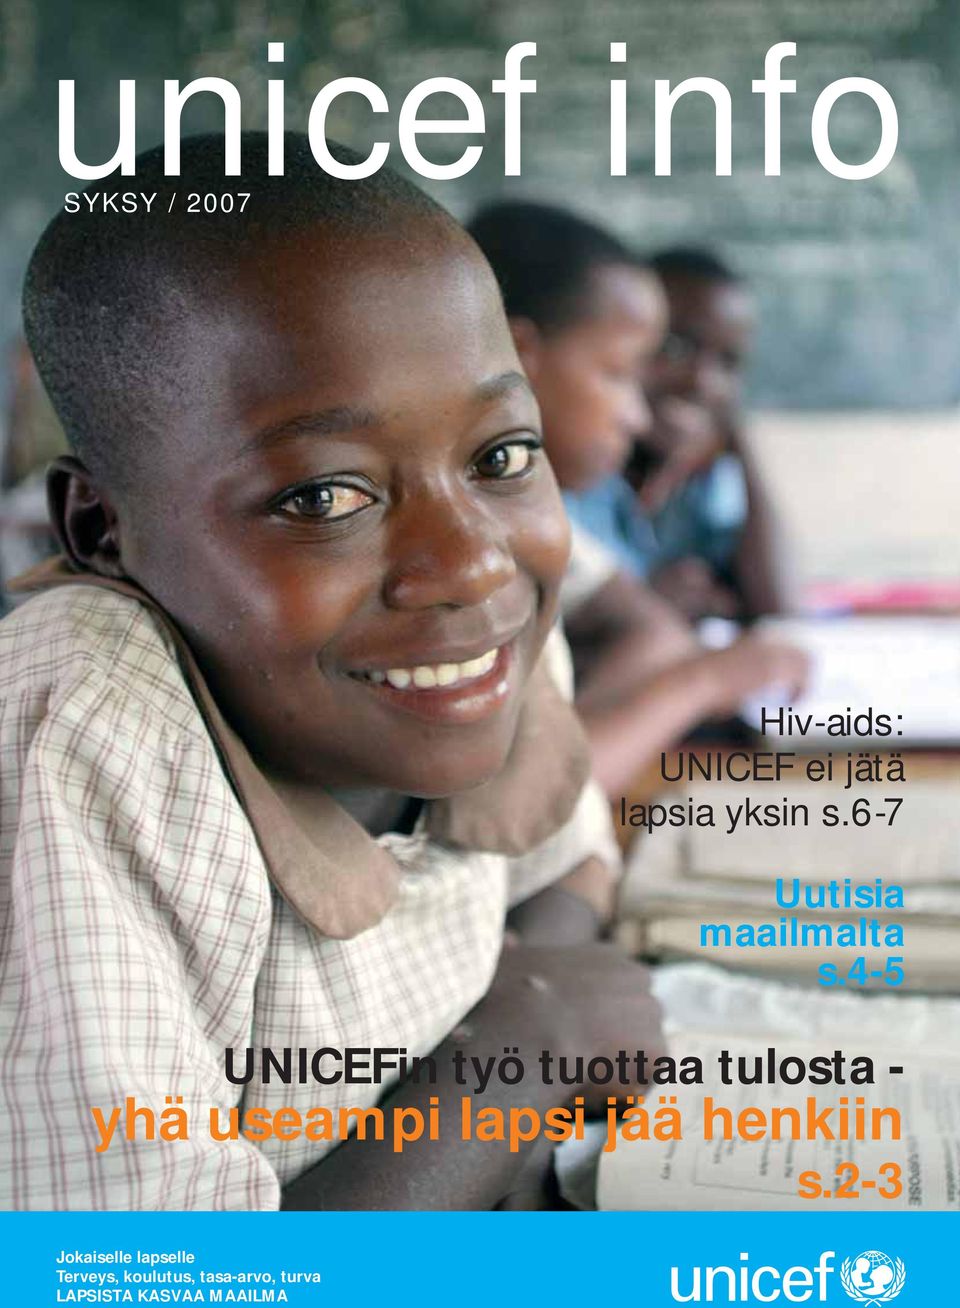 4-5 UNICEFin työ tuottaa tulosta - yhä useampi lapsi jää